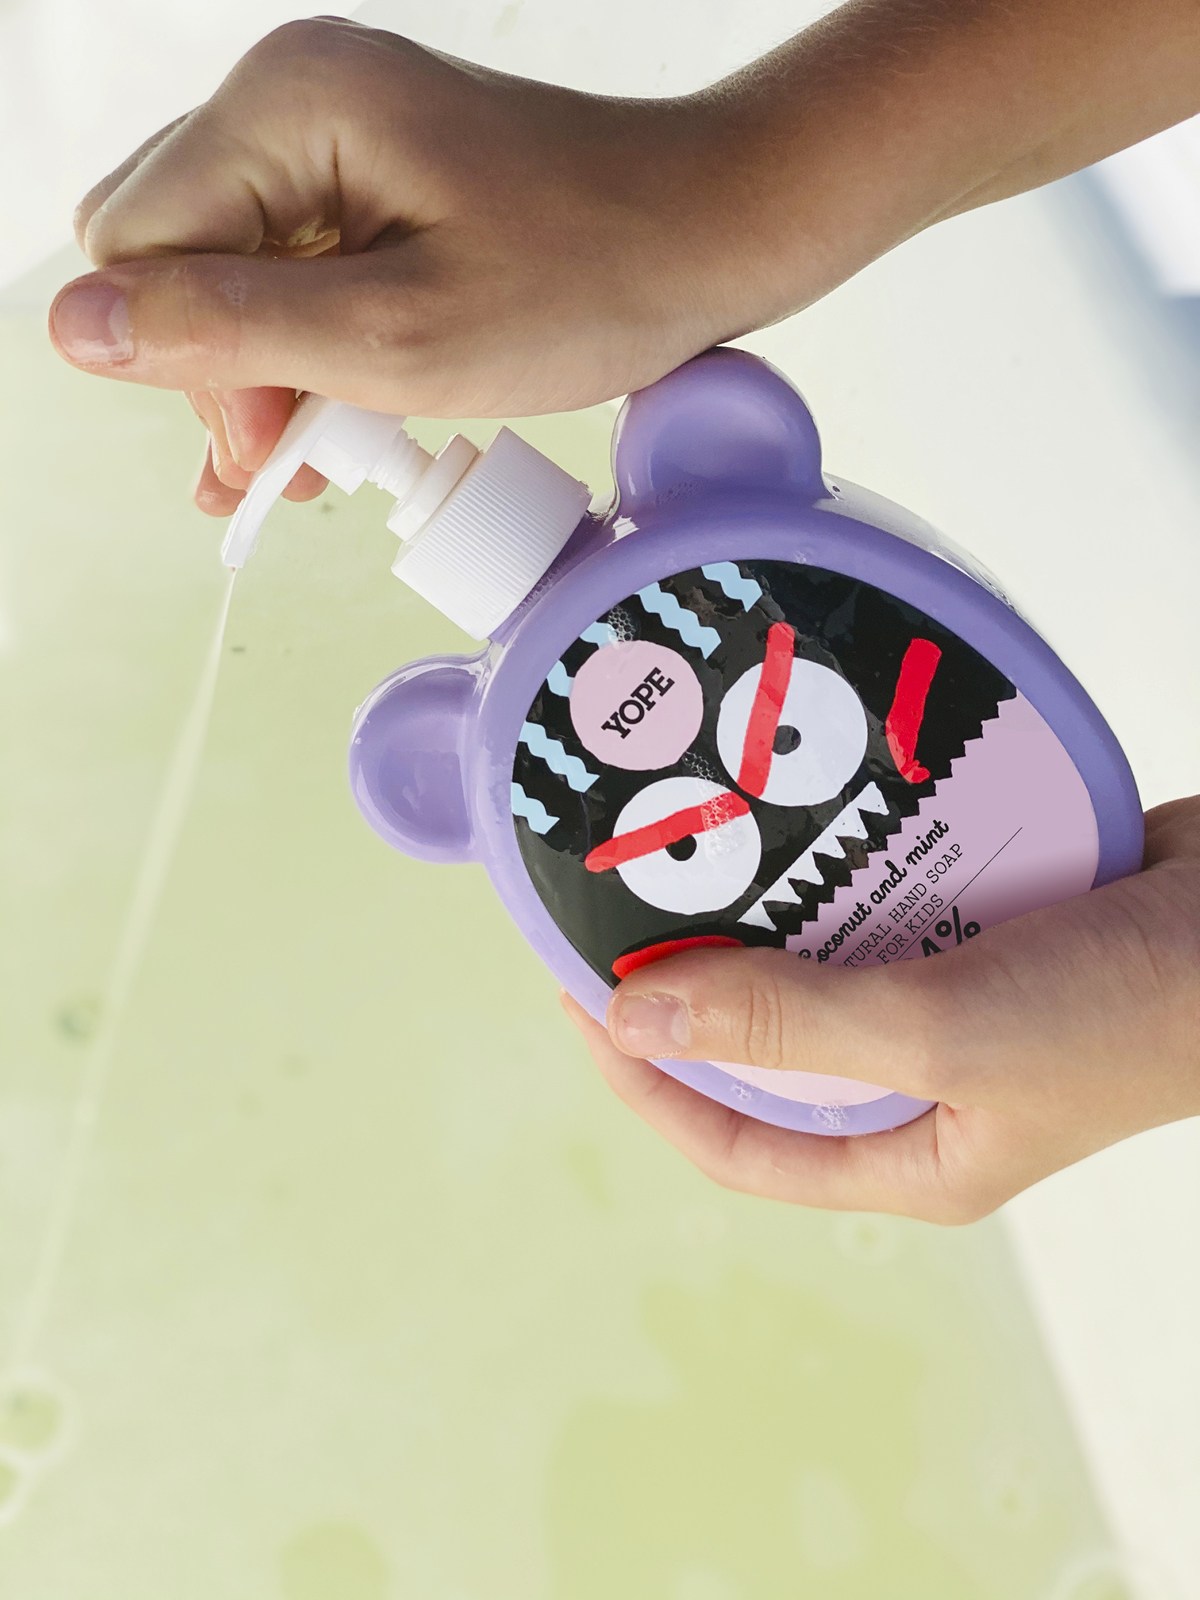 Yope Coconut & Mint sapone liquido per le mani per bambini